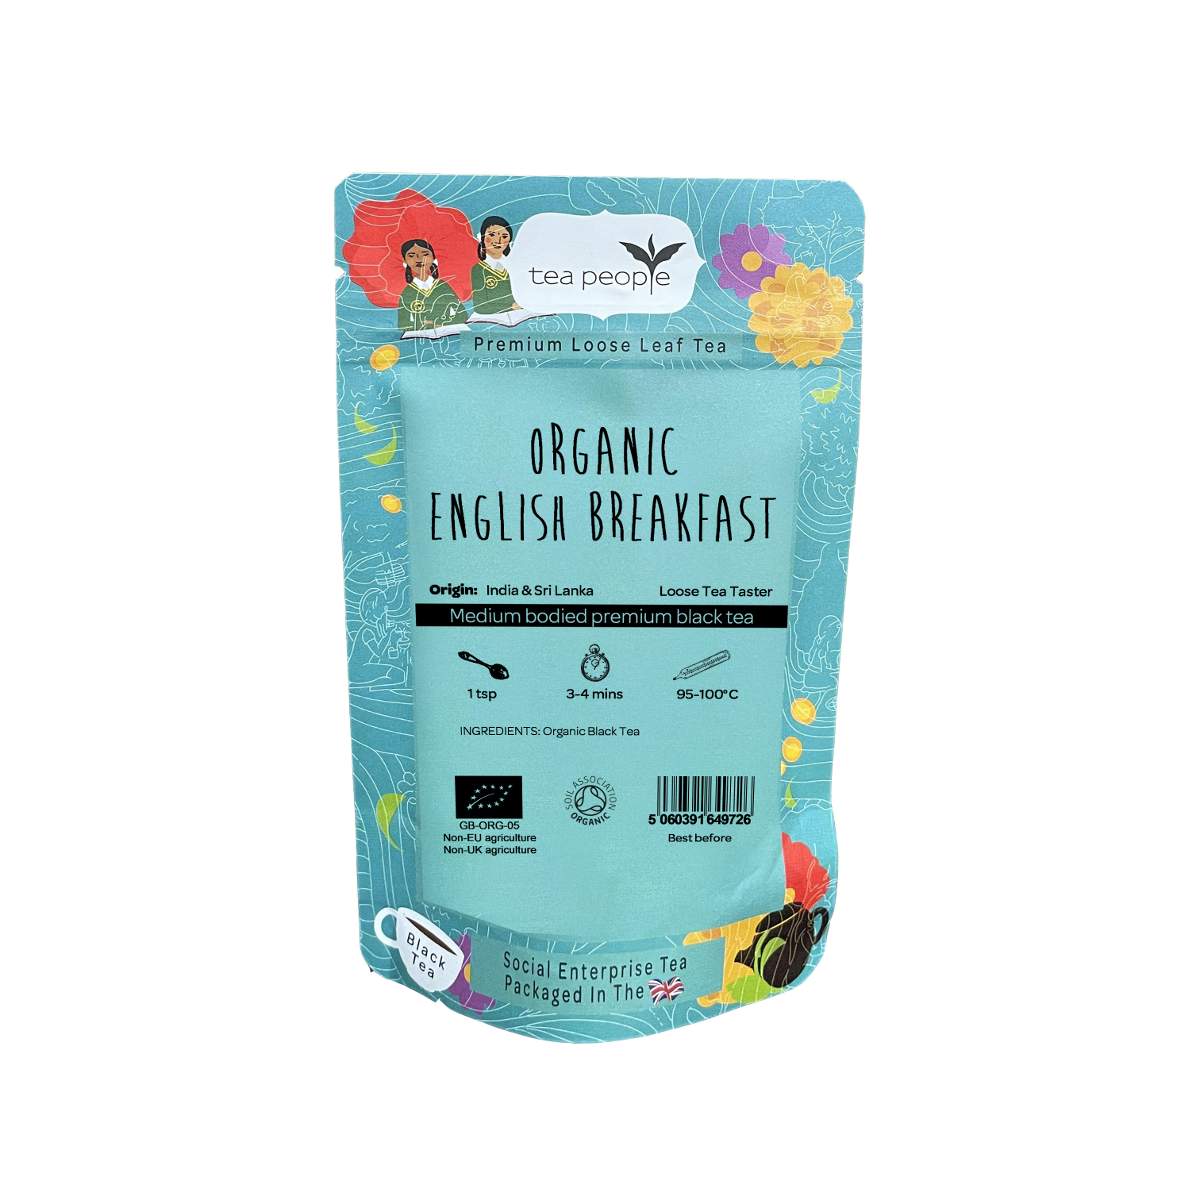 Organic English Breakfast - Loose Black Tea - Loose Leaf Tea Taster Pack